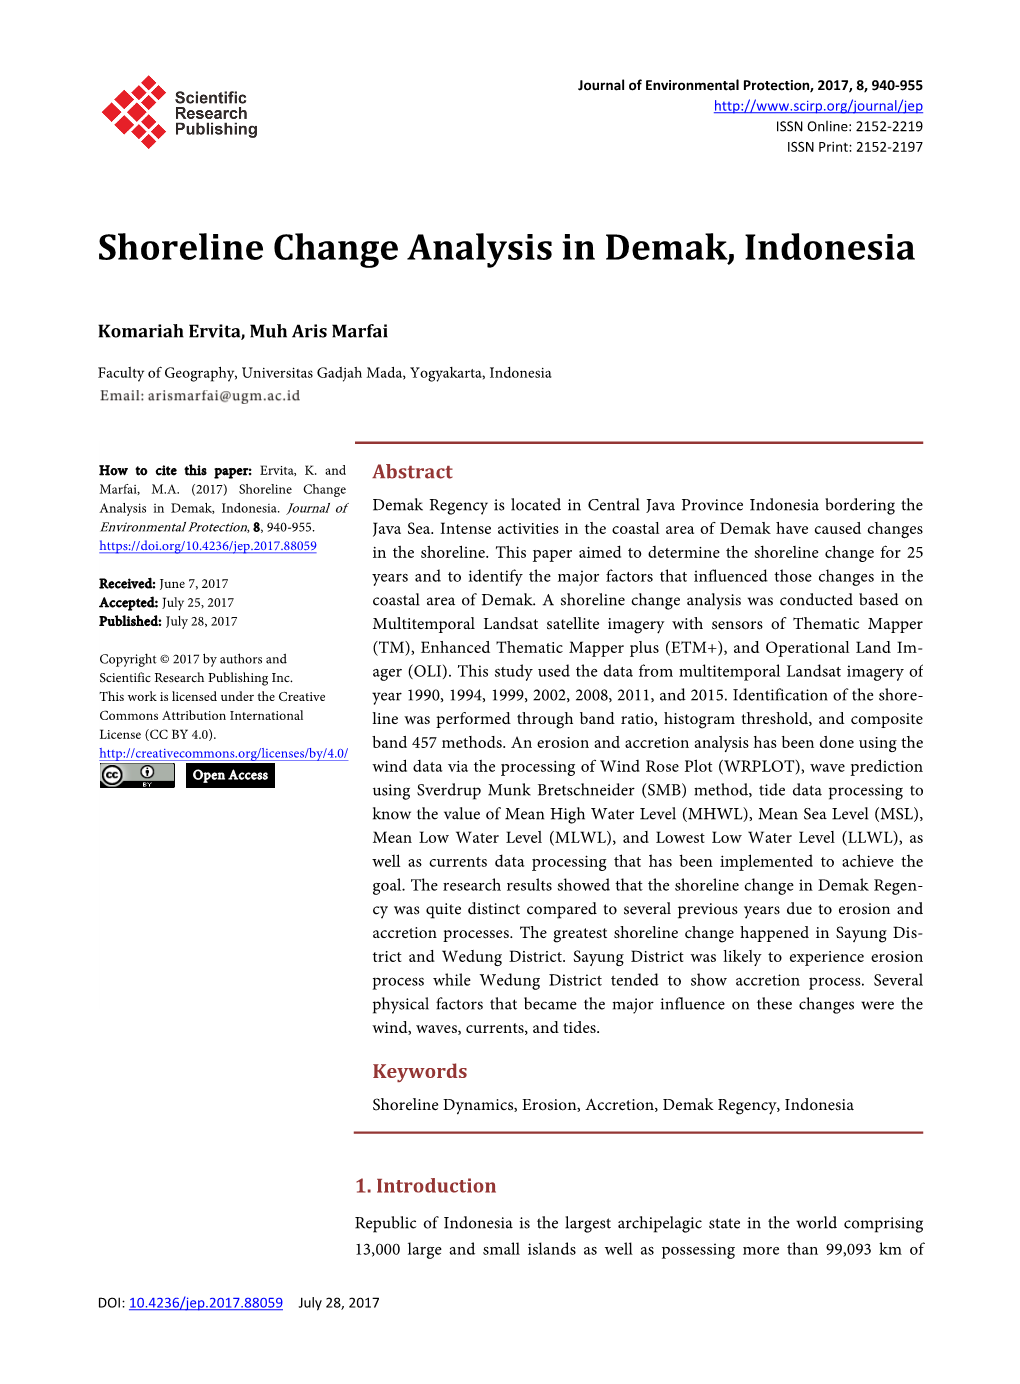 Shoreline Change Analysis in Demak, Indonesia